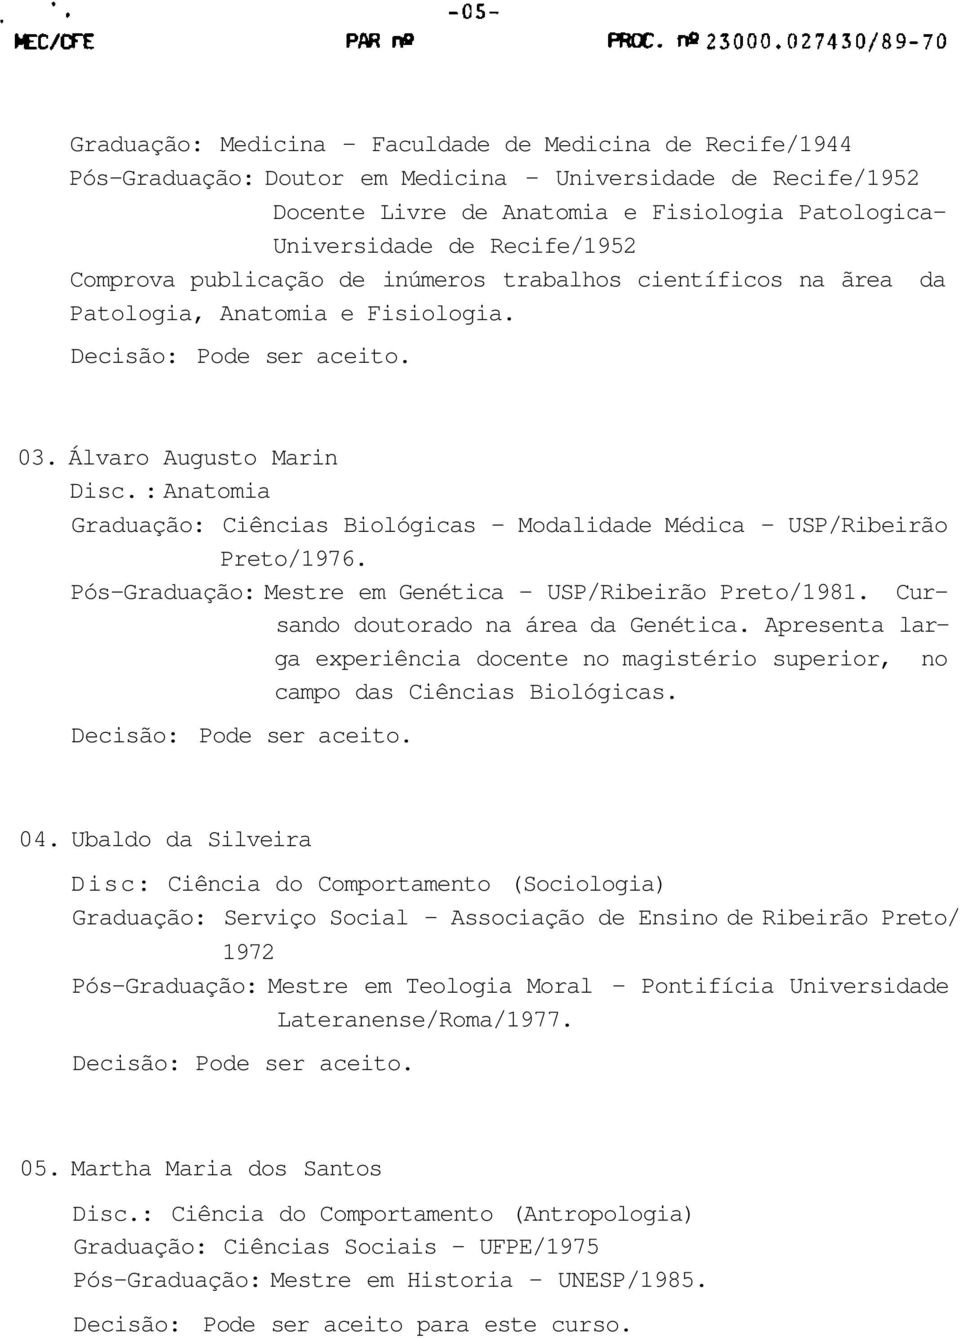 : Anatomia Graduação: Ciências Biológicas - Modalidade Médica - USP/Ribeirão Preto/1976. Pós-Graduação: Mestre em Genética - USP/Ribeirão Preto/1981. Cursando doutorado na área da Genética.